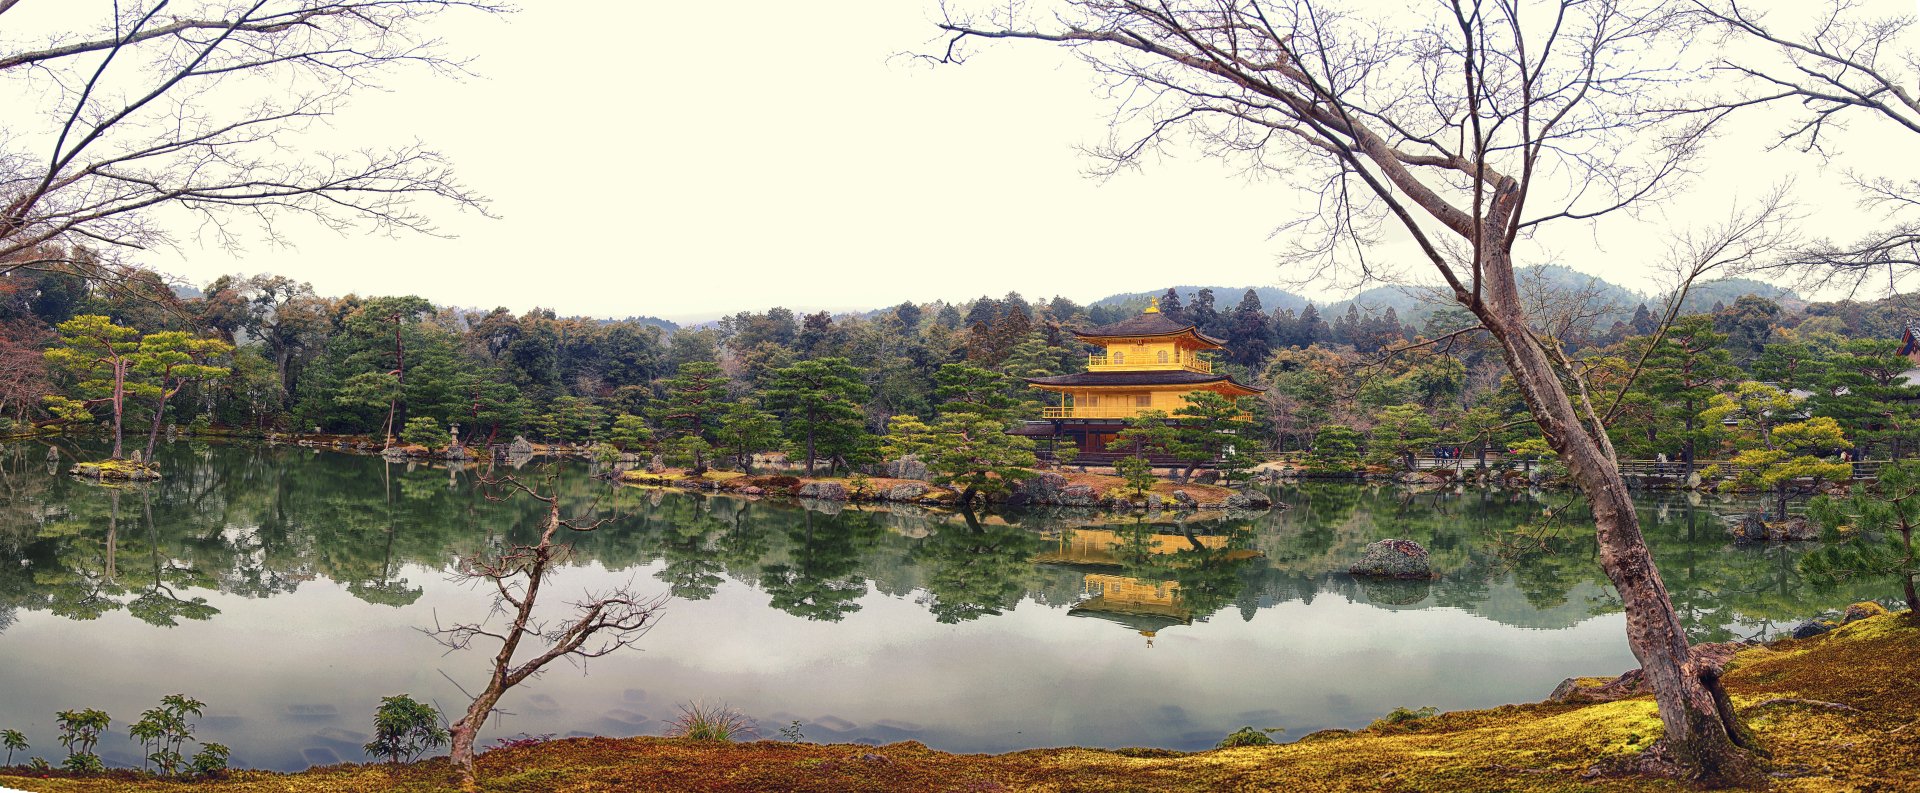 金閣寺 – Temple of the Golden Pavilion Panorama